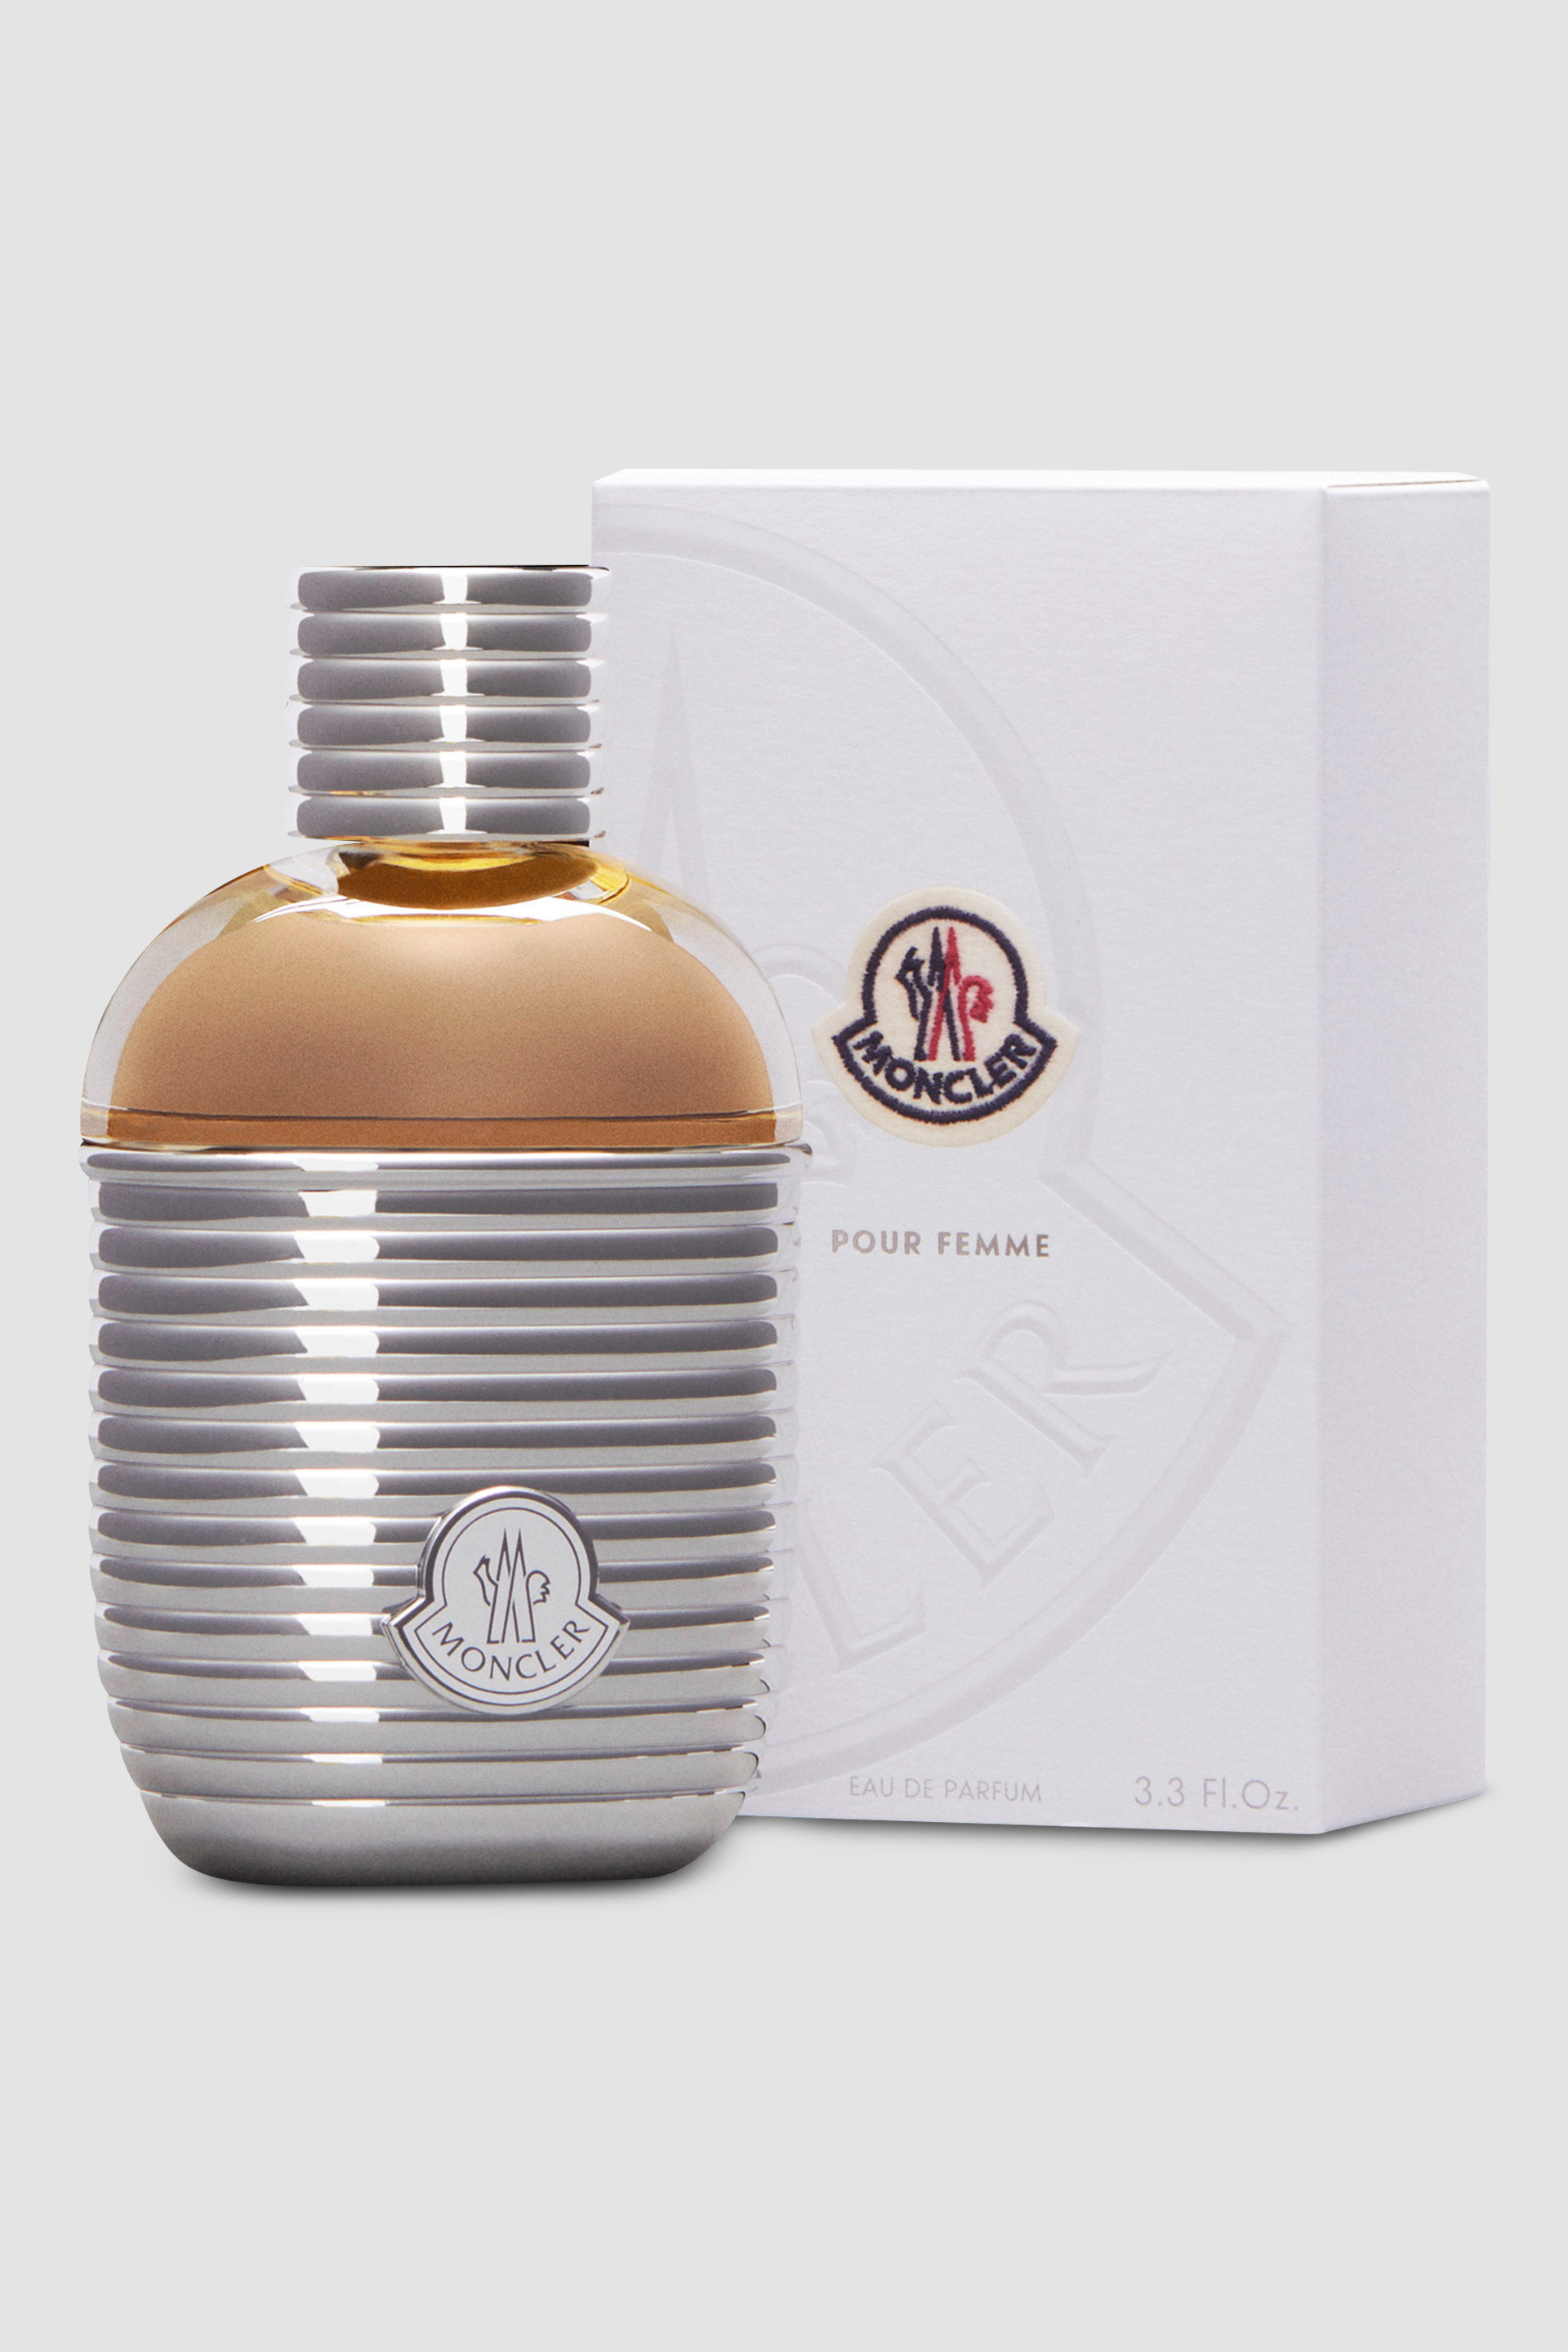 Black Moncler Pour Femme 3.3 Fl.Oz. - Perfumes for Women | Moncler US